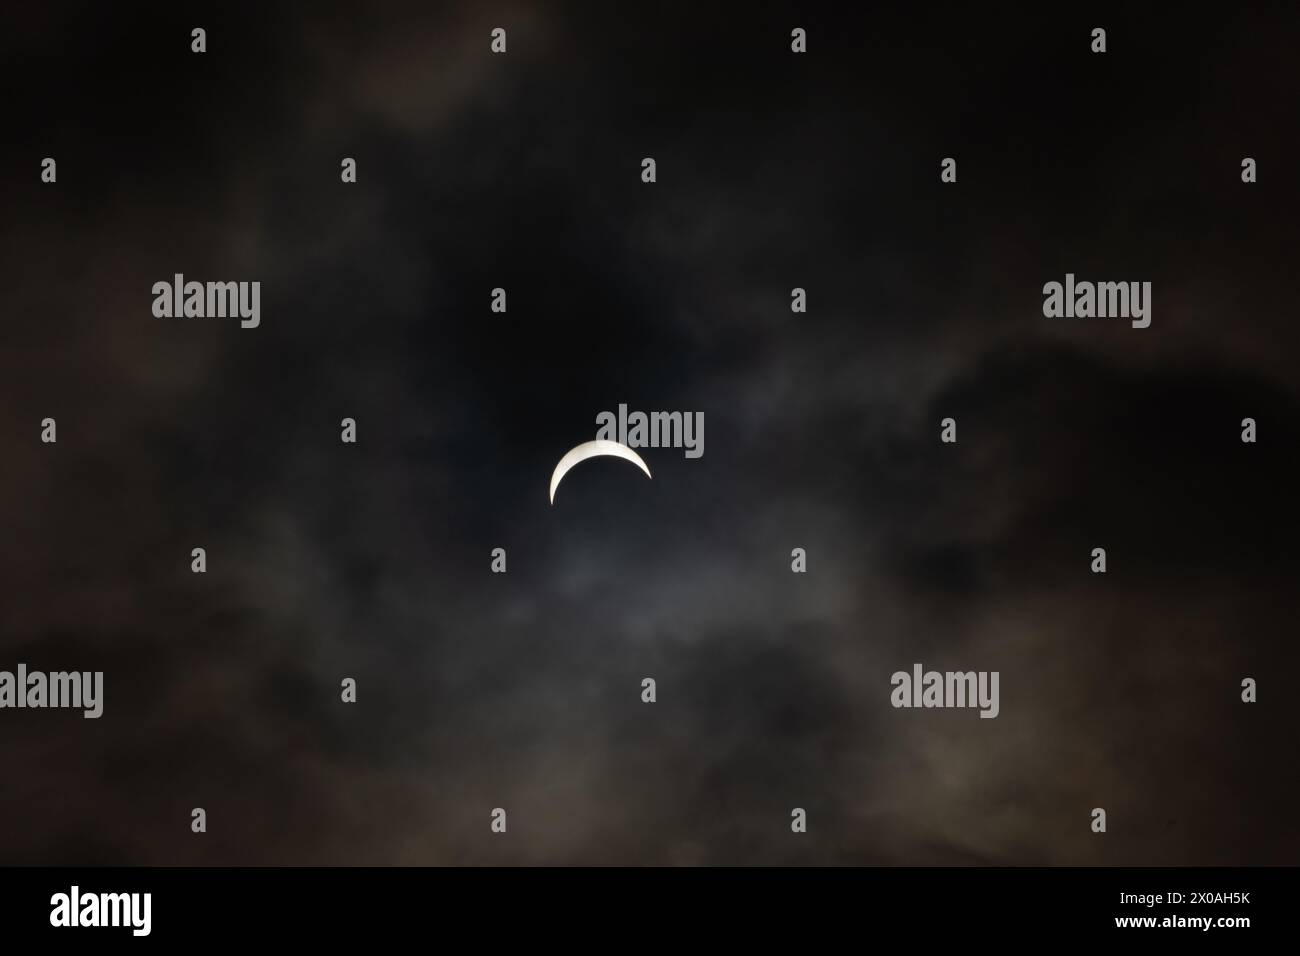 Partielle Sonnenfinsternis - Mond bedeckt Sonne, dunkle Wolken, himmlisches Drama - Halbmondsonne - atmosphärische Stimmung. Aufgenommen in Toronto, Kanada. Stockfoto